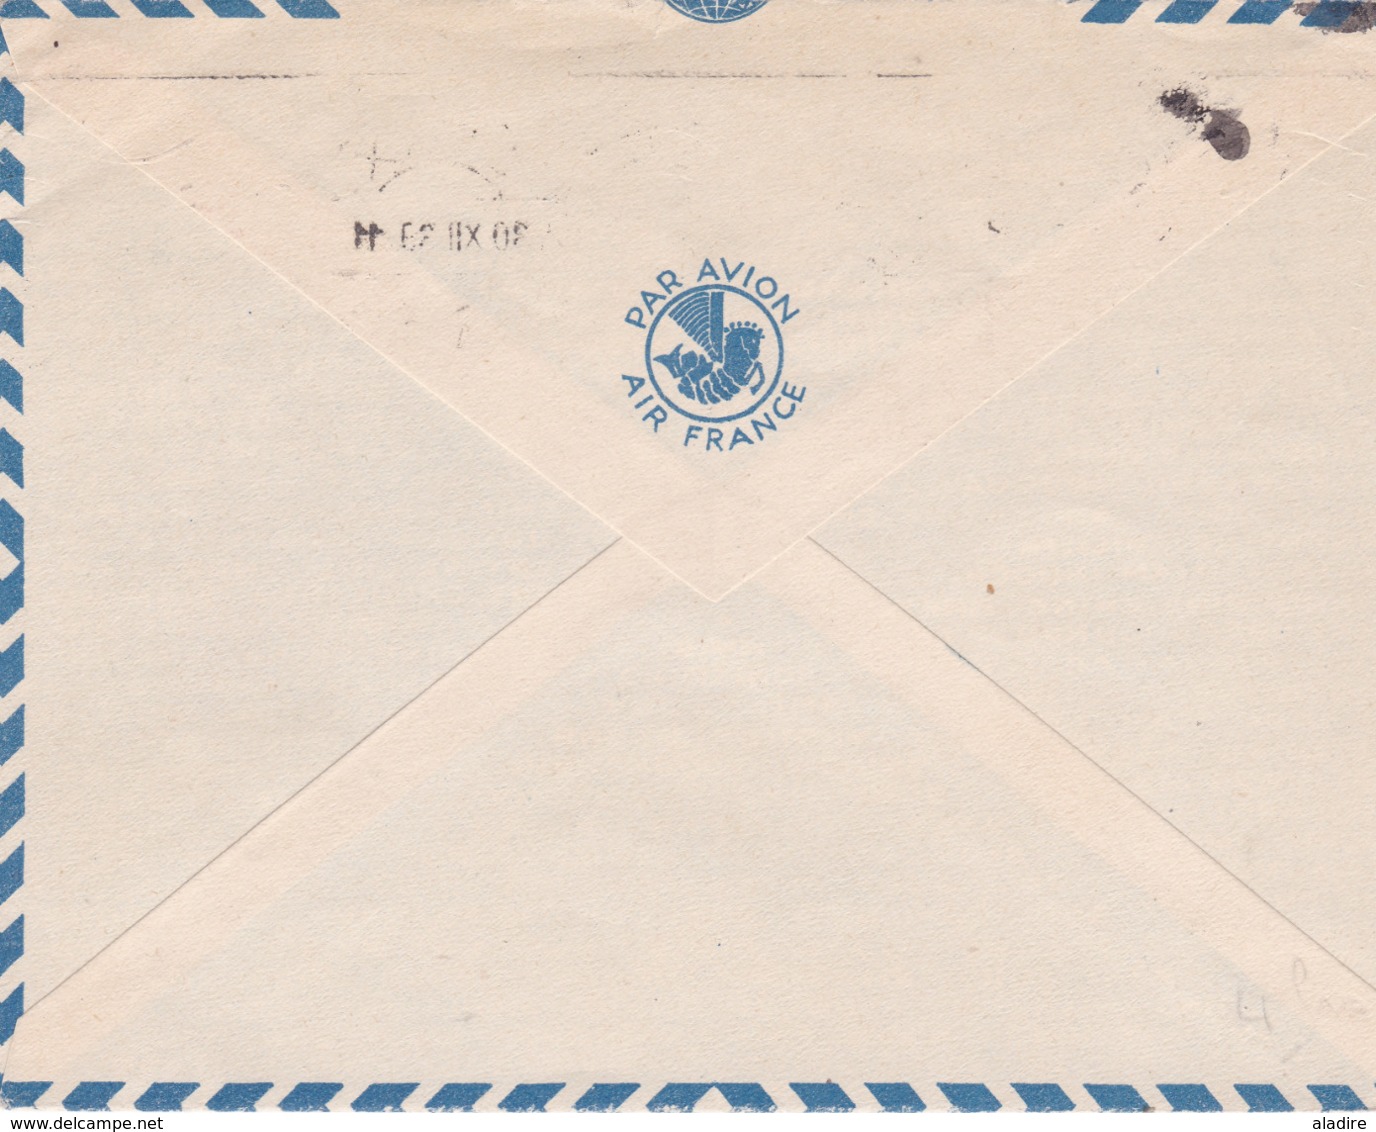 TUNISIE - Marcophilie avant indépendance - collection de 18 enveloppes, Cp et 1 entier - 36 scans recto & verso